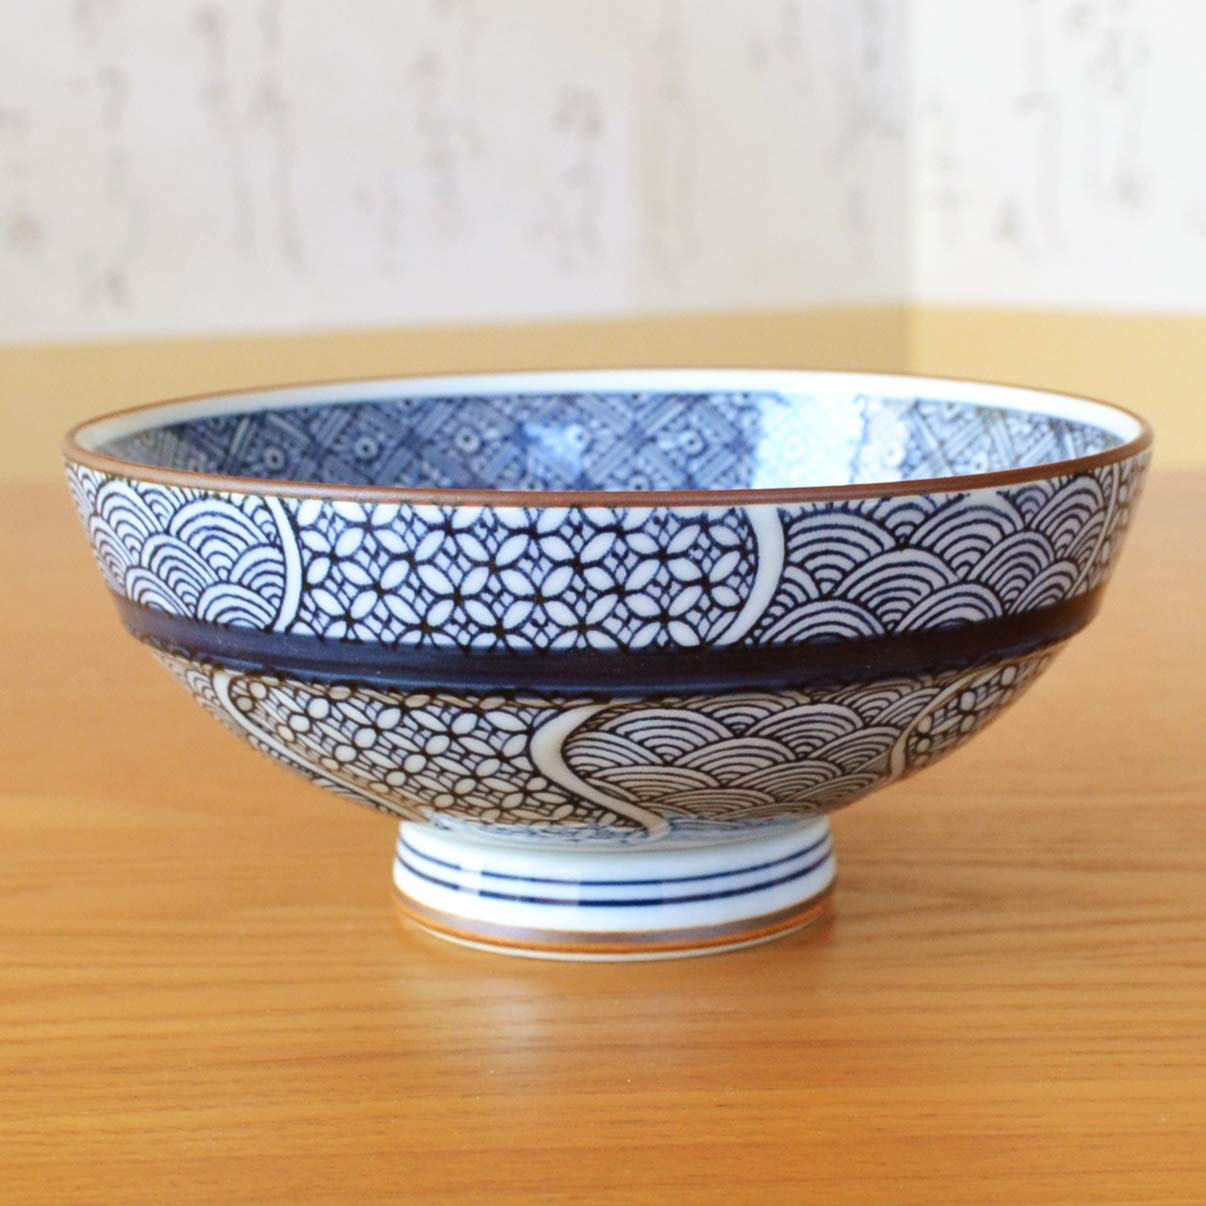 有田焼やきもの市場 Japanese Rice Bowl 5.3 inches in Diameter Ceramic Arita Imari ware Made in Japan Porcelain Jimon-ori Large